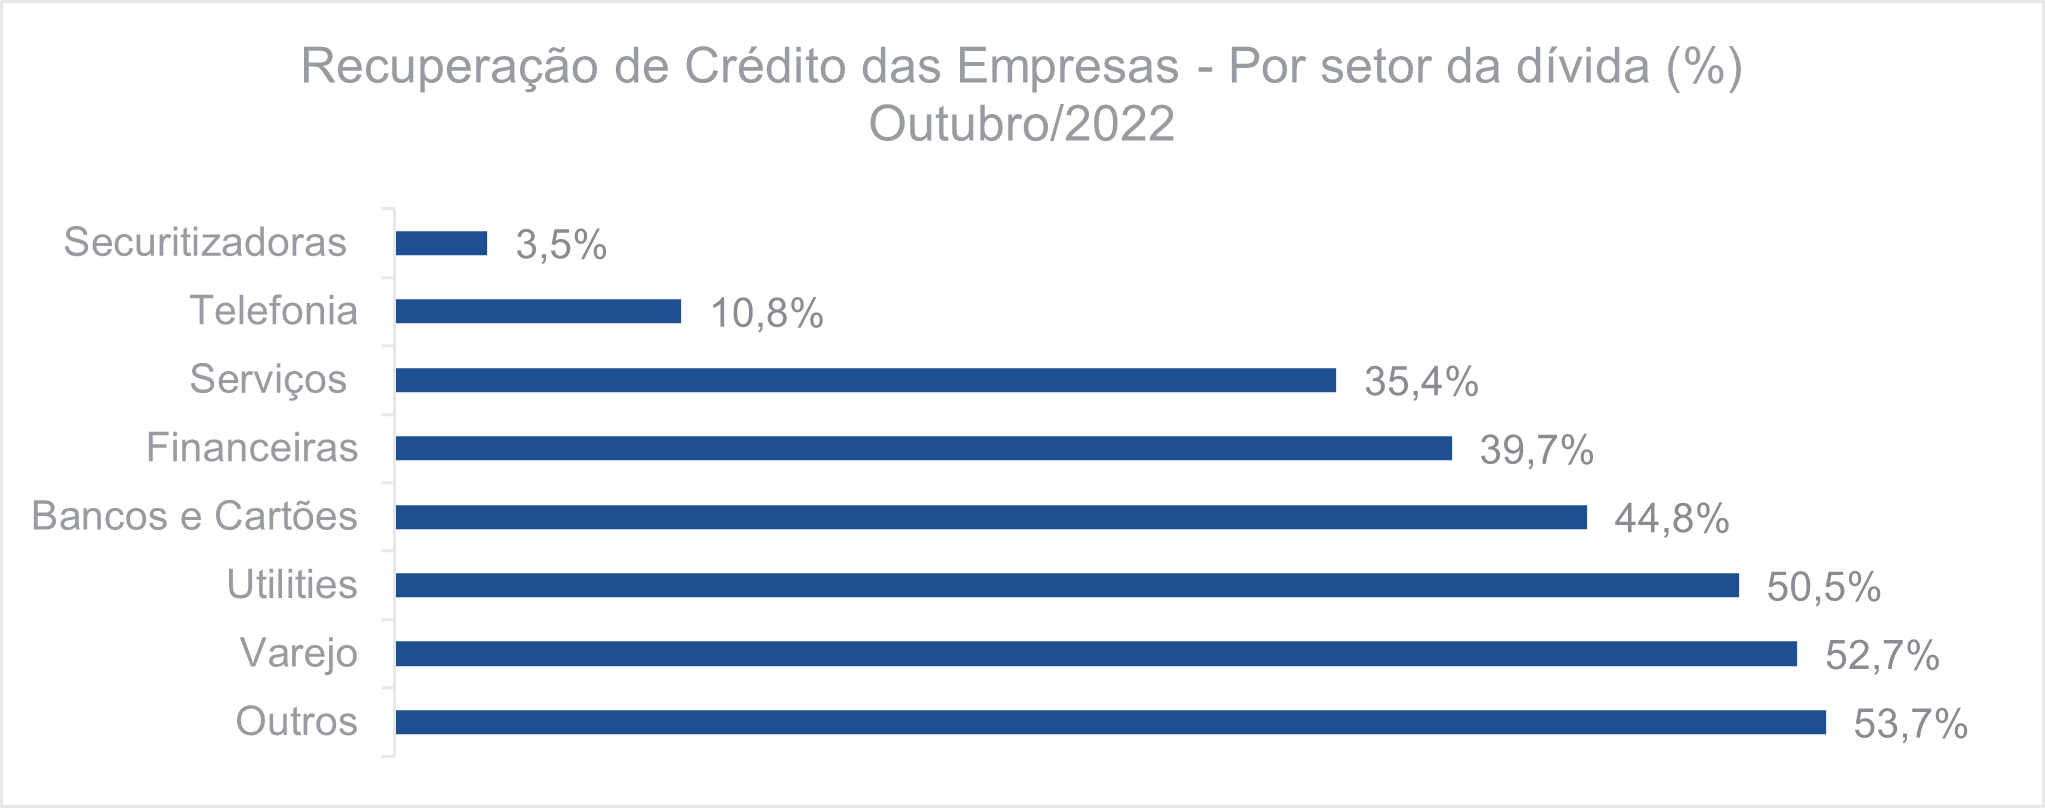 Recuperação de crédito das empresas Por setor da dívida Outrubro 2022